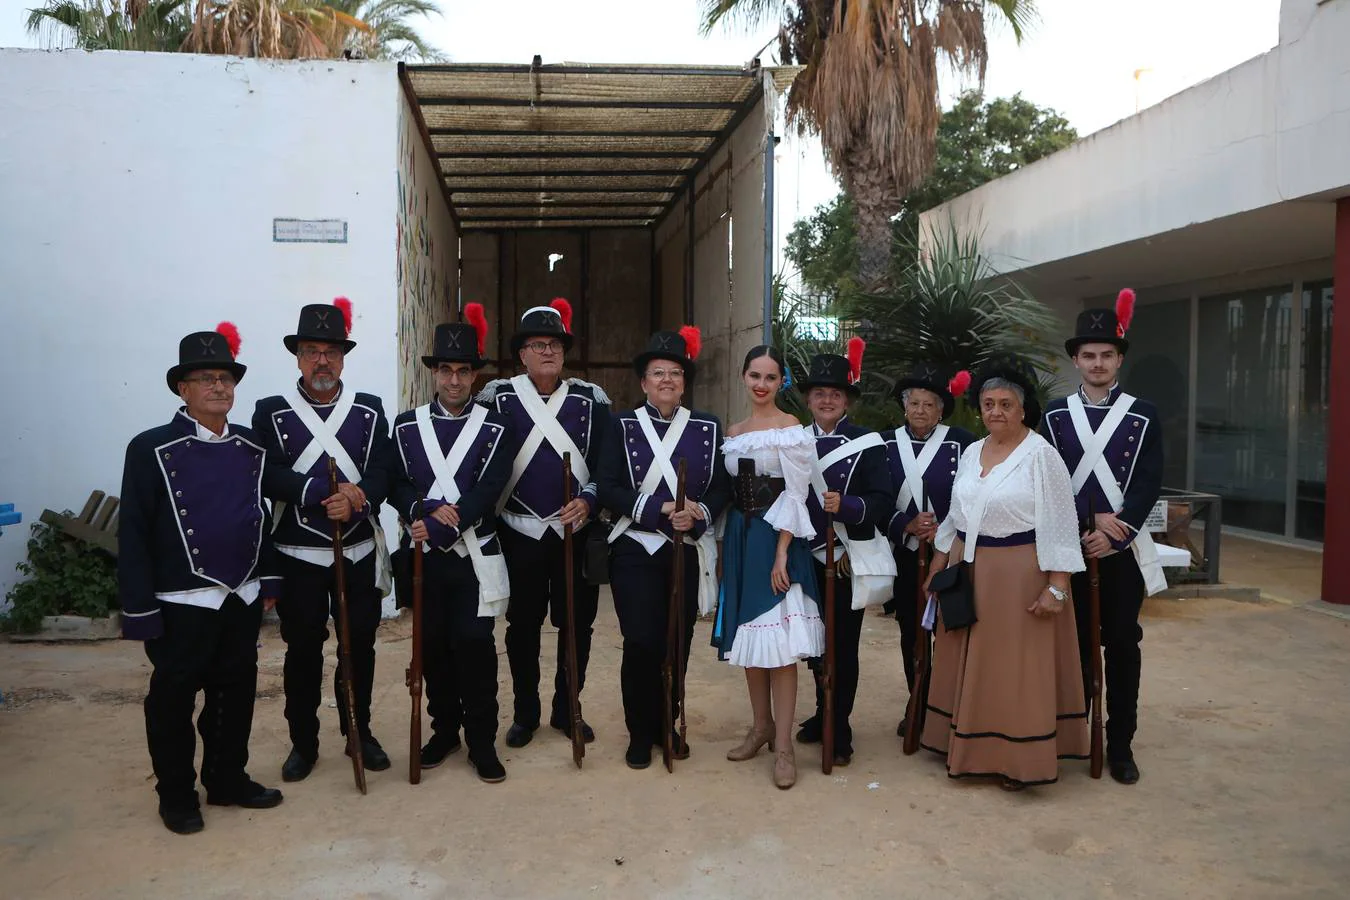 Puntales celebra su Fiesta de los cañonazos tras años de ausencia